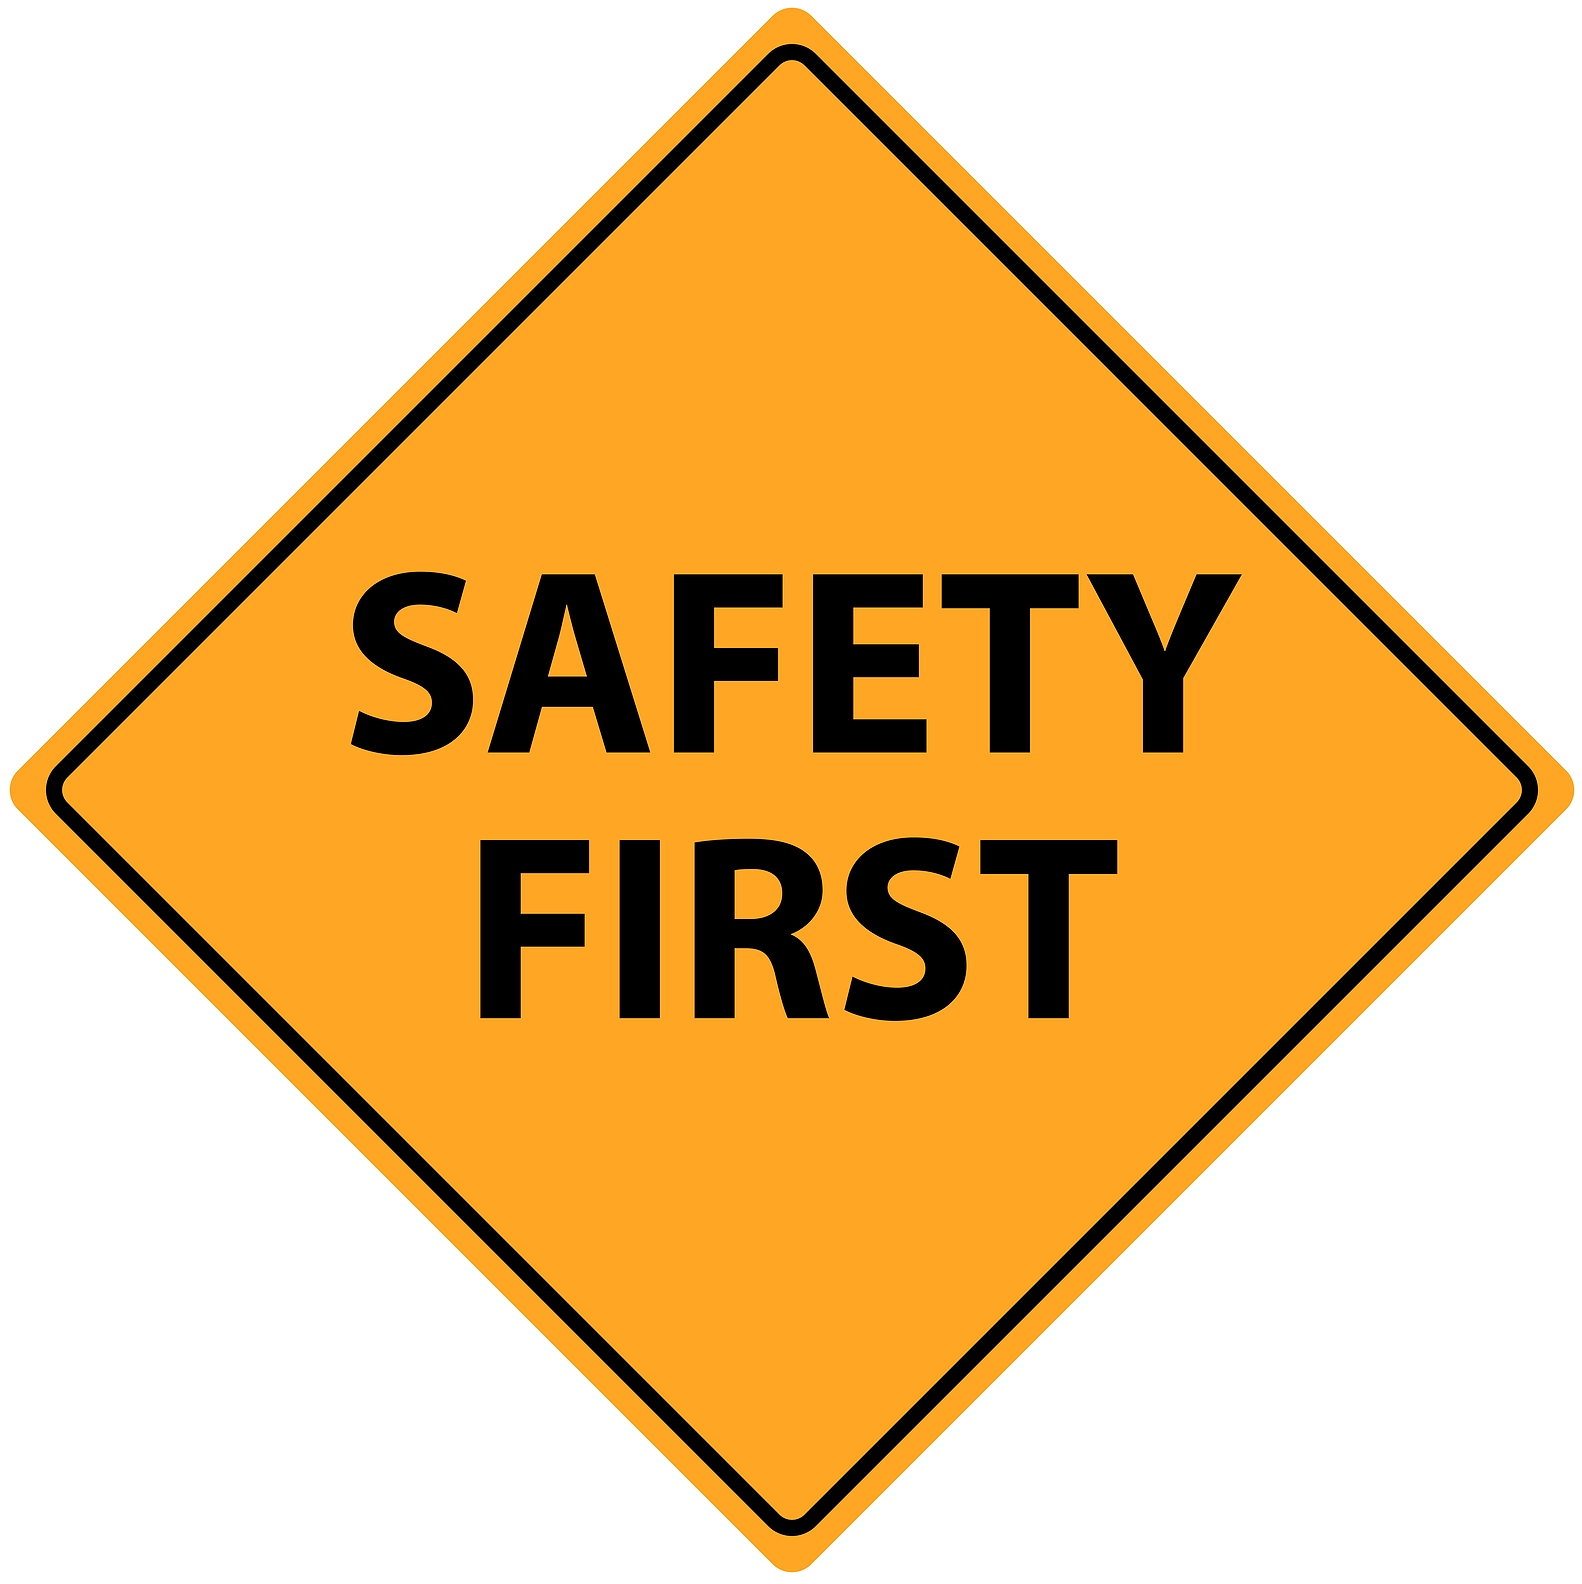 Safety Guiding Principles